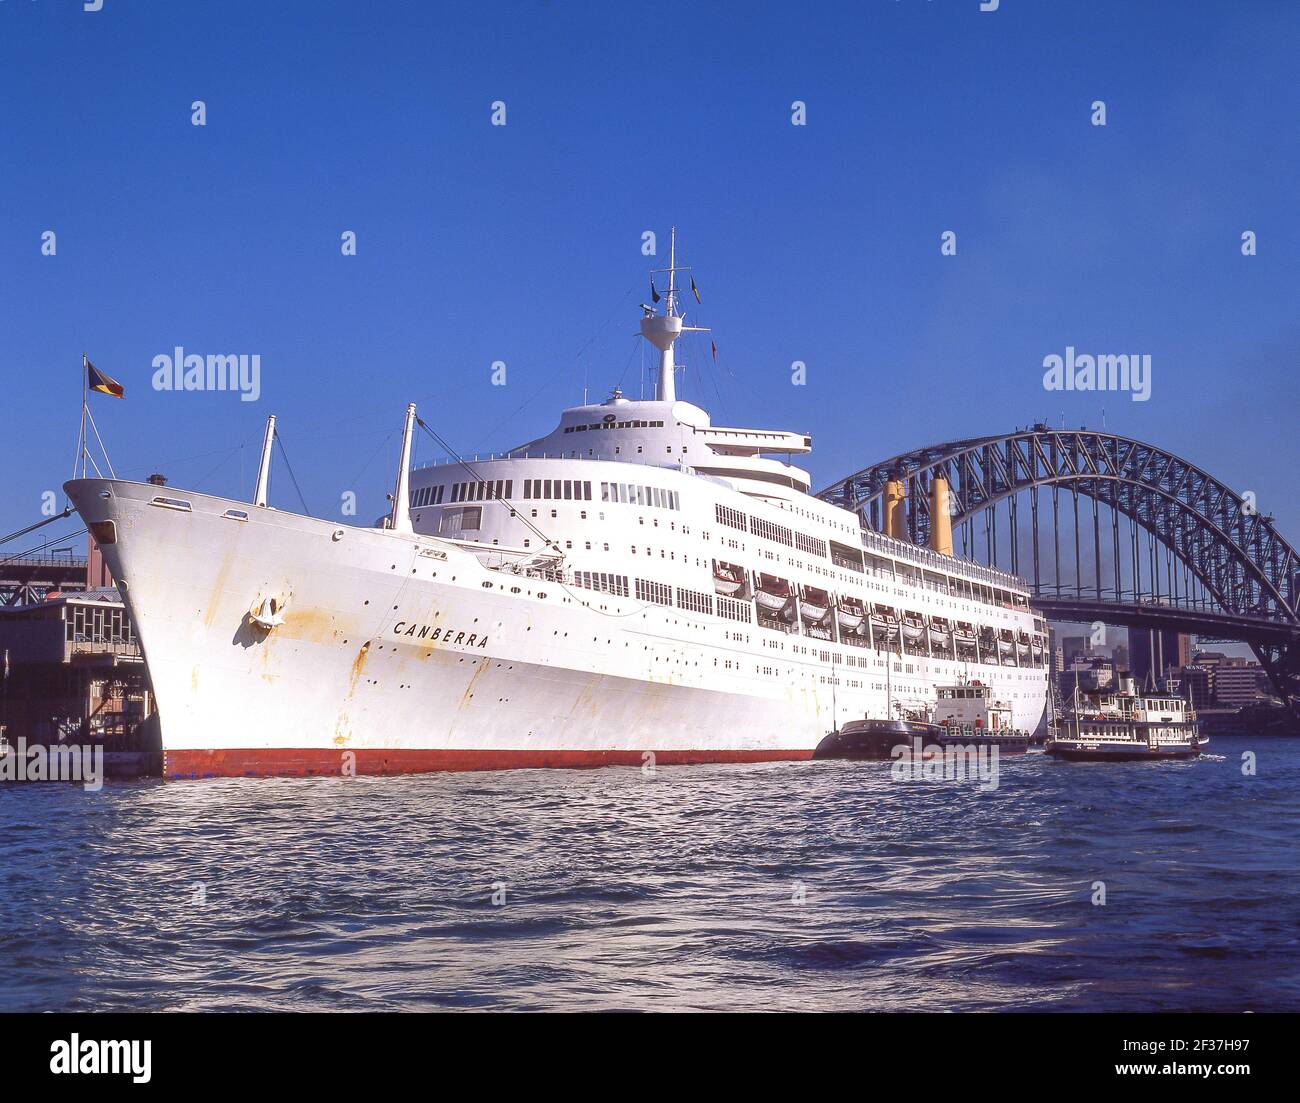 L'ancien bateau de croisière P&O Canberra a amarré à Circular Quay, dans le port de Sydney, à Sydney, en Nouvelle-Galles du Sud, en Australie Banque D'Images